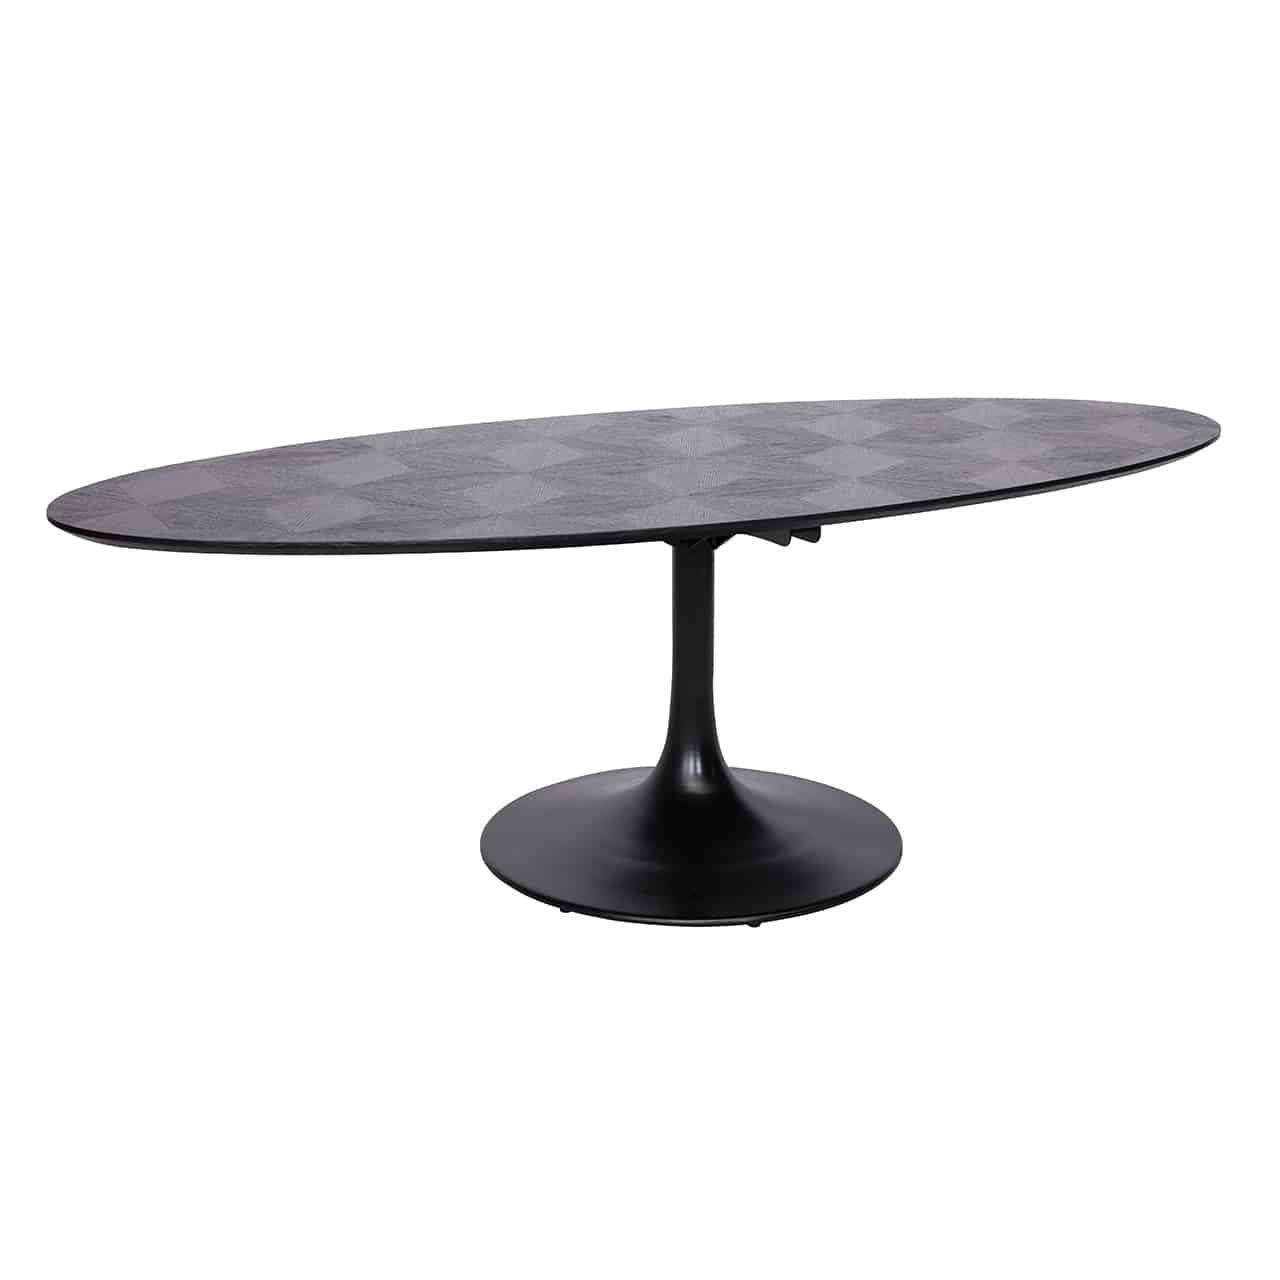 Schwarzer Esstisch mit einem röhrenförmigen Fuß auf einem großen Standteller, darauf eine breite, ovale Holzplatte mit Rautenmuster.